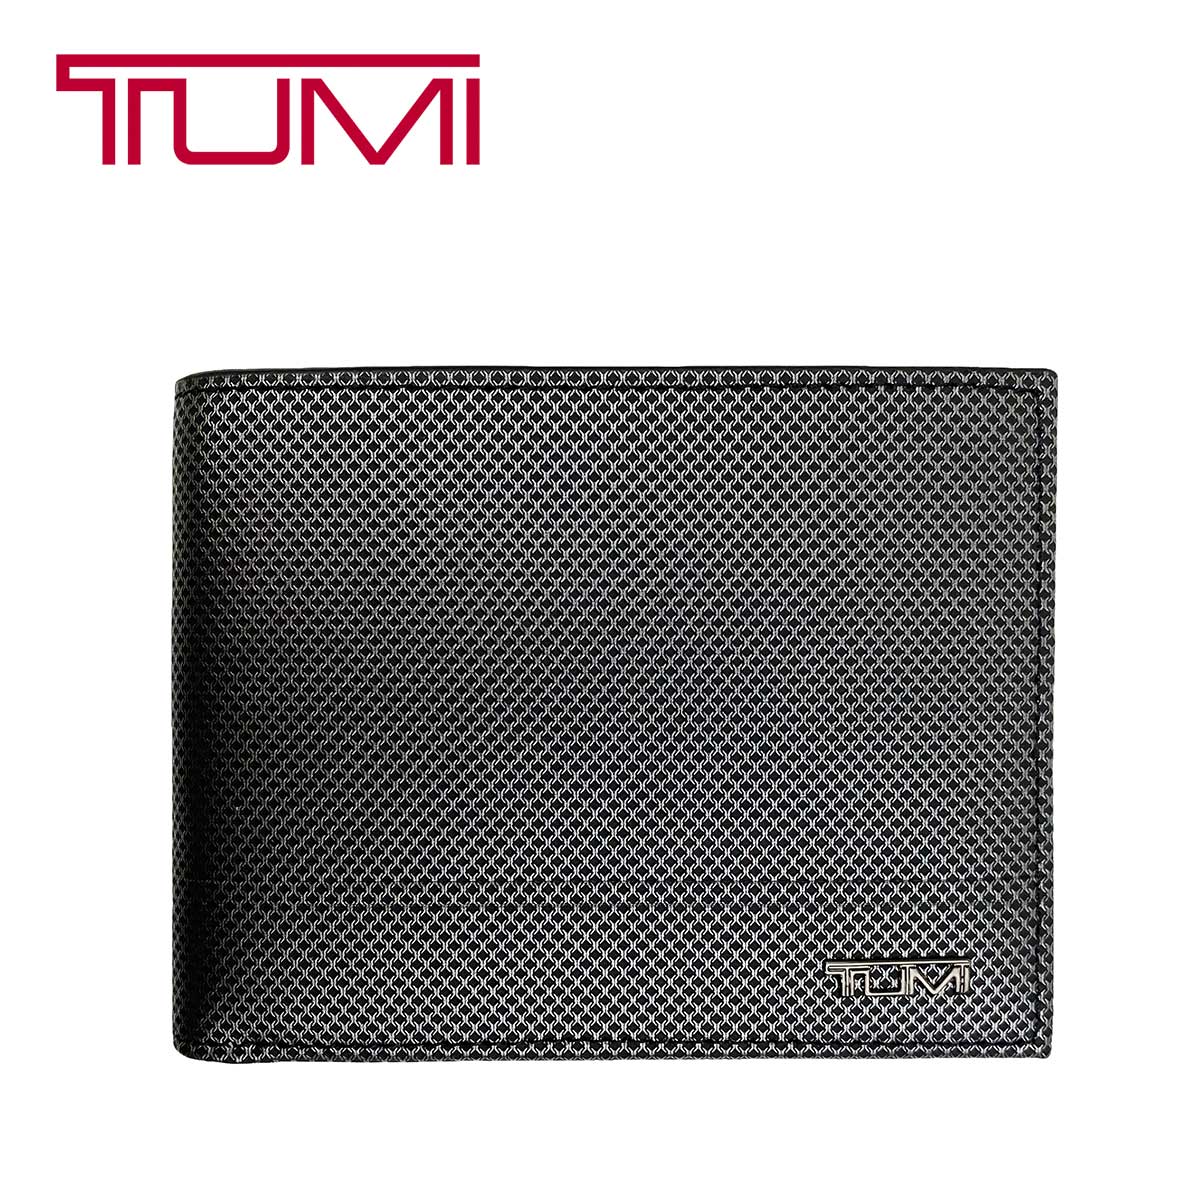 【楽天市場】TUMI トゥミ 財布 本革 レザー 二つ折り 札入れ 